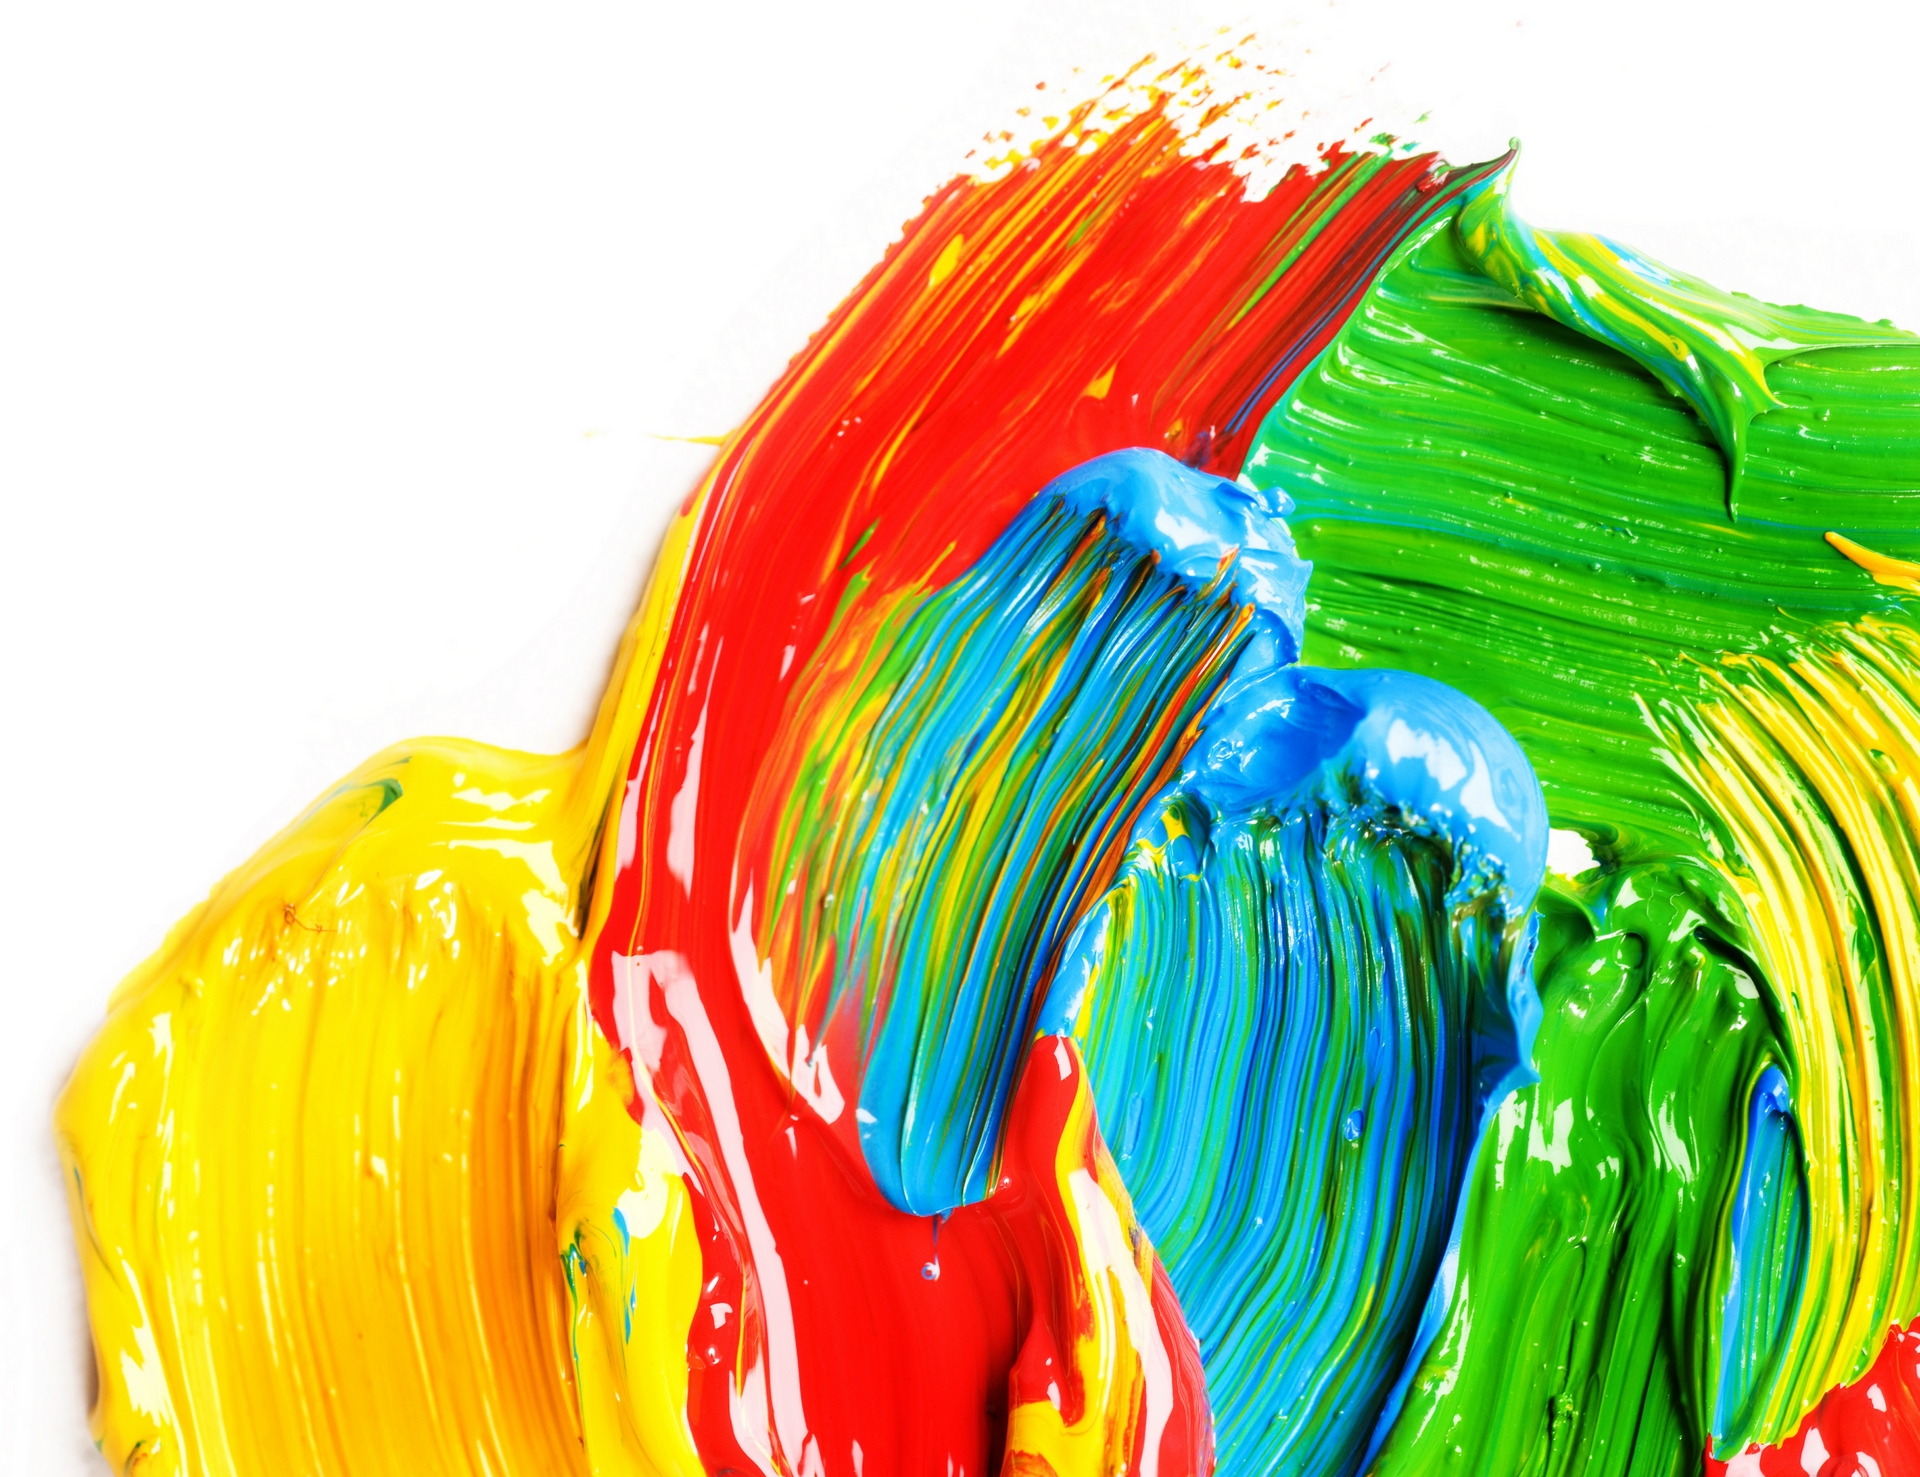 Colourful Paints - Bright Colors - 1920x1477 Wallpaper 